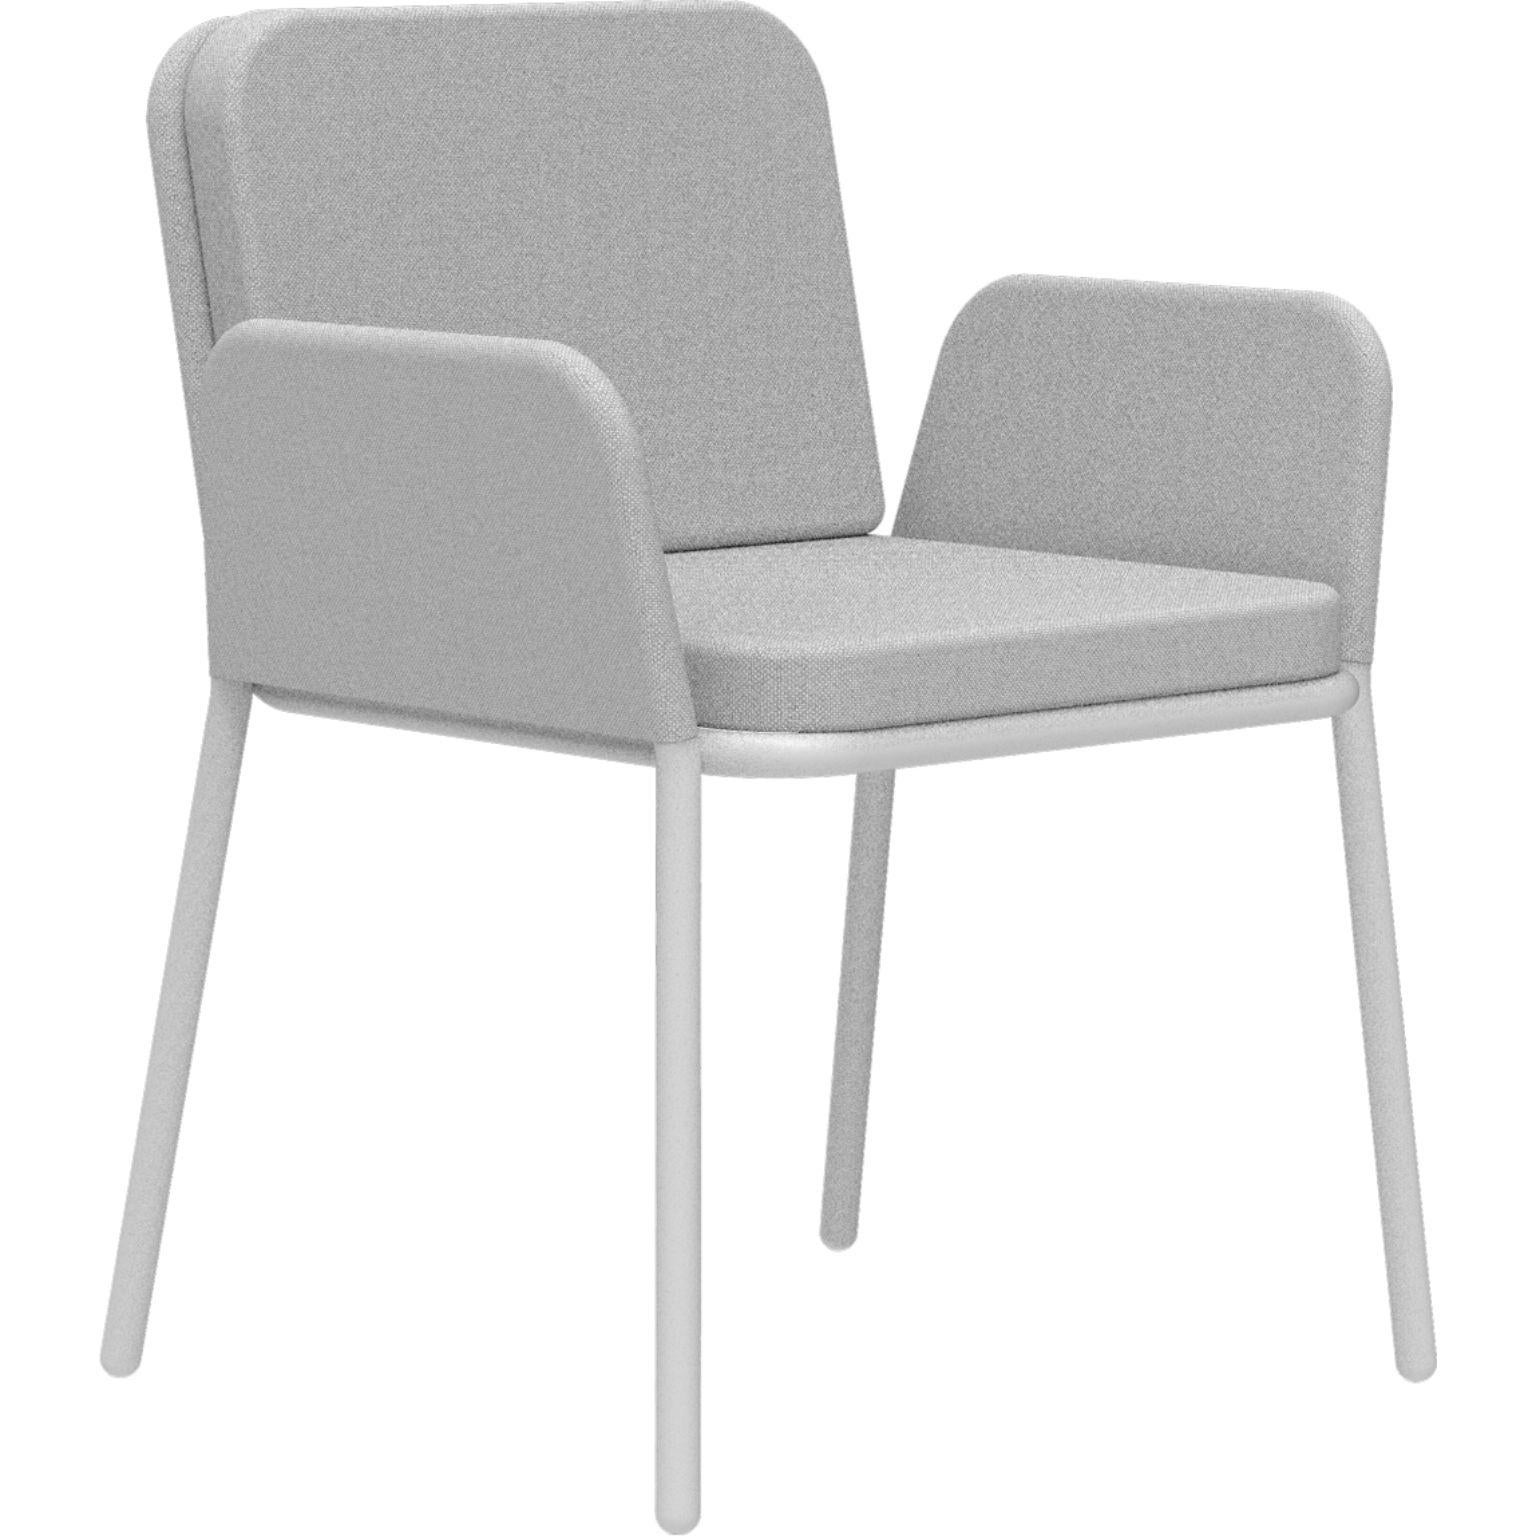 Bezug Weißer Sessel von Mowee
Abmessungen: T60 x B62 x H83 cm (Sitzhöhe 48 cm)
MATERIAL: Aluminium und Polstermaterial.
Gewicht: 5 kg.
Auch in verschiedenen Farben und Ausführungen erhältlich.

Eine Collection'S, die durch ihre Schönheit und